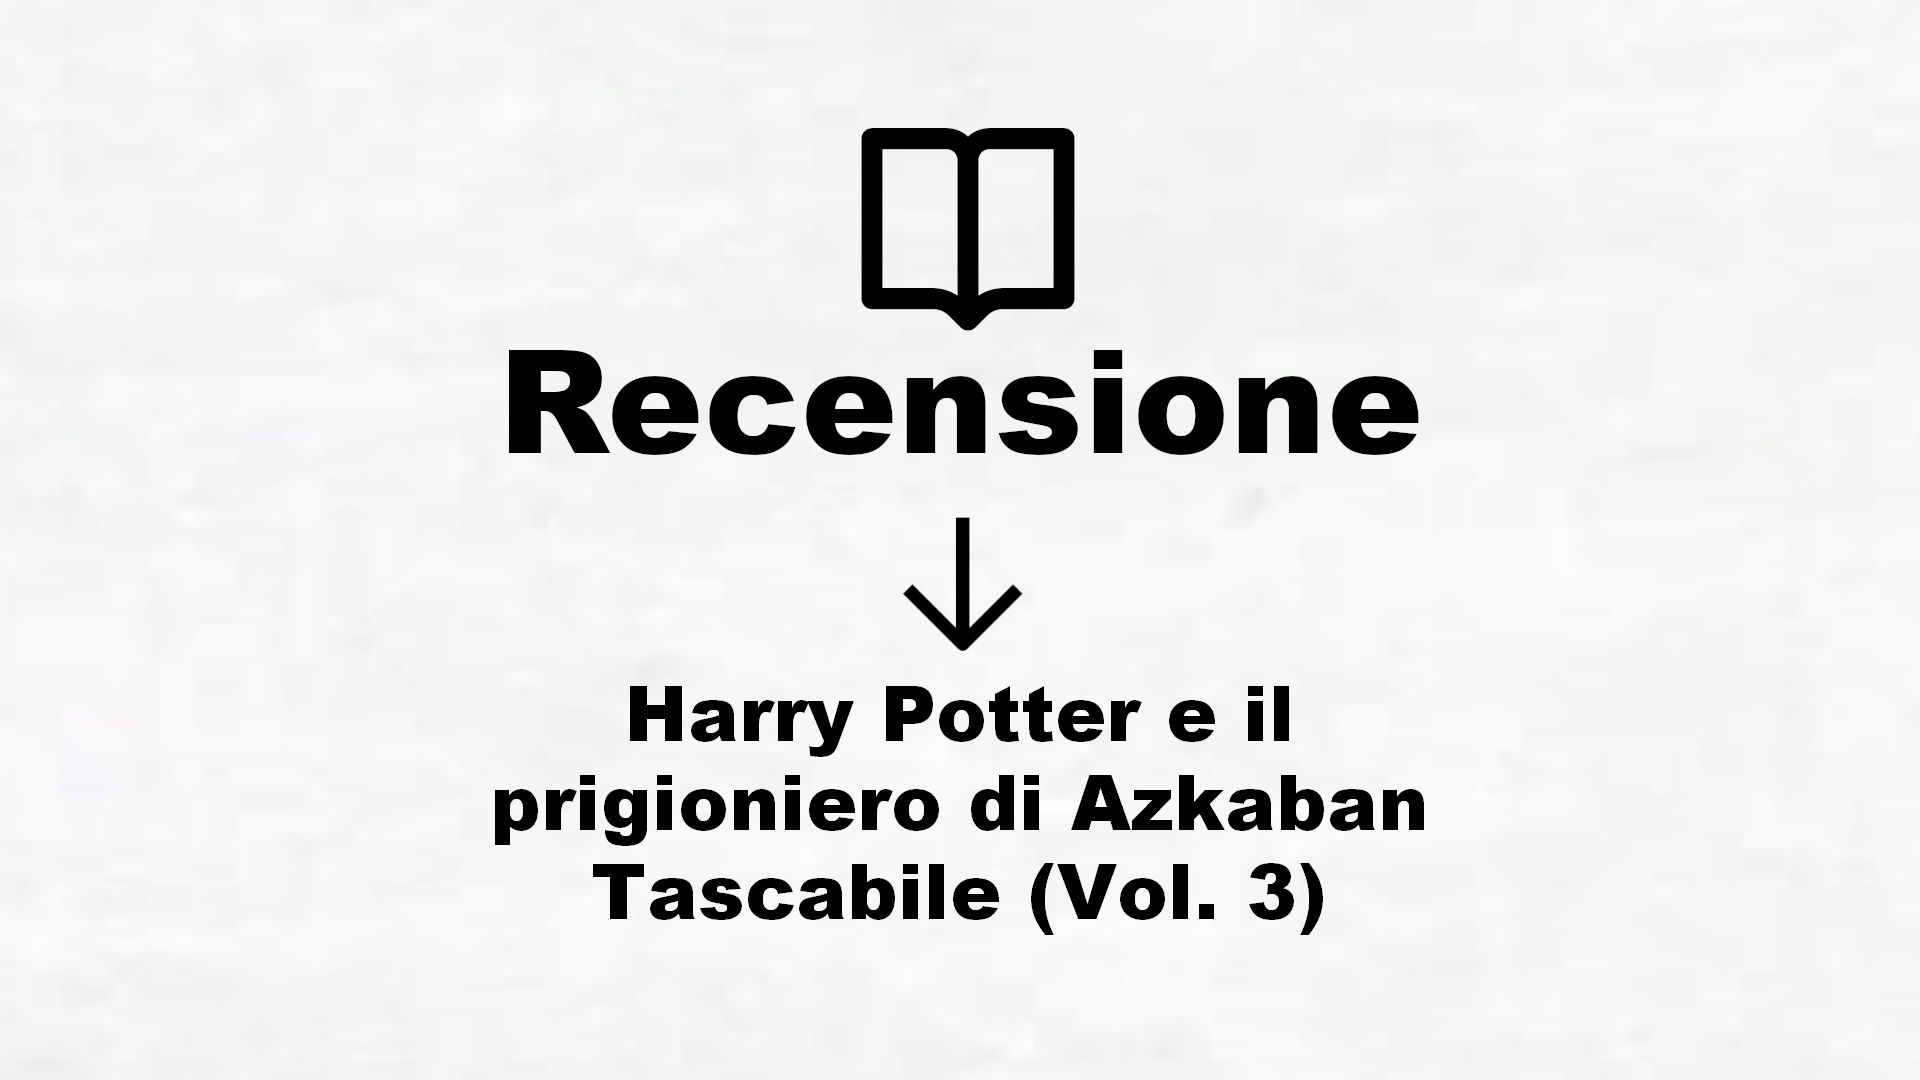 Harry Potter e il prigioniero di Azkaban Tascabile (Vol. 3) – Recensione Libro